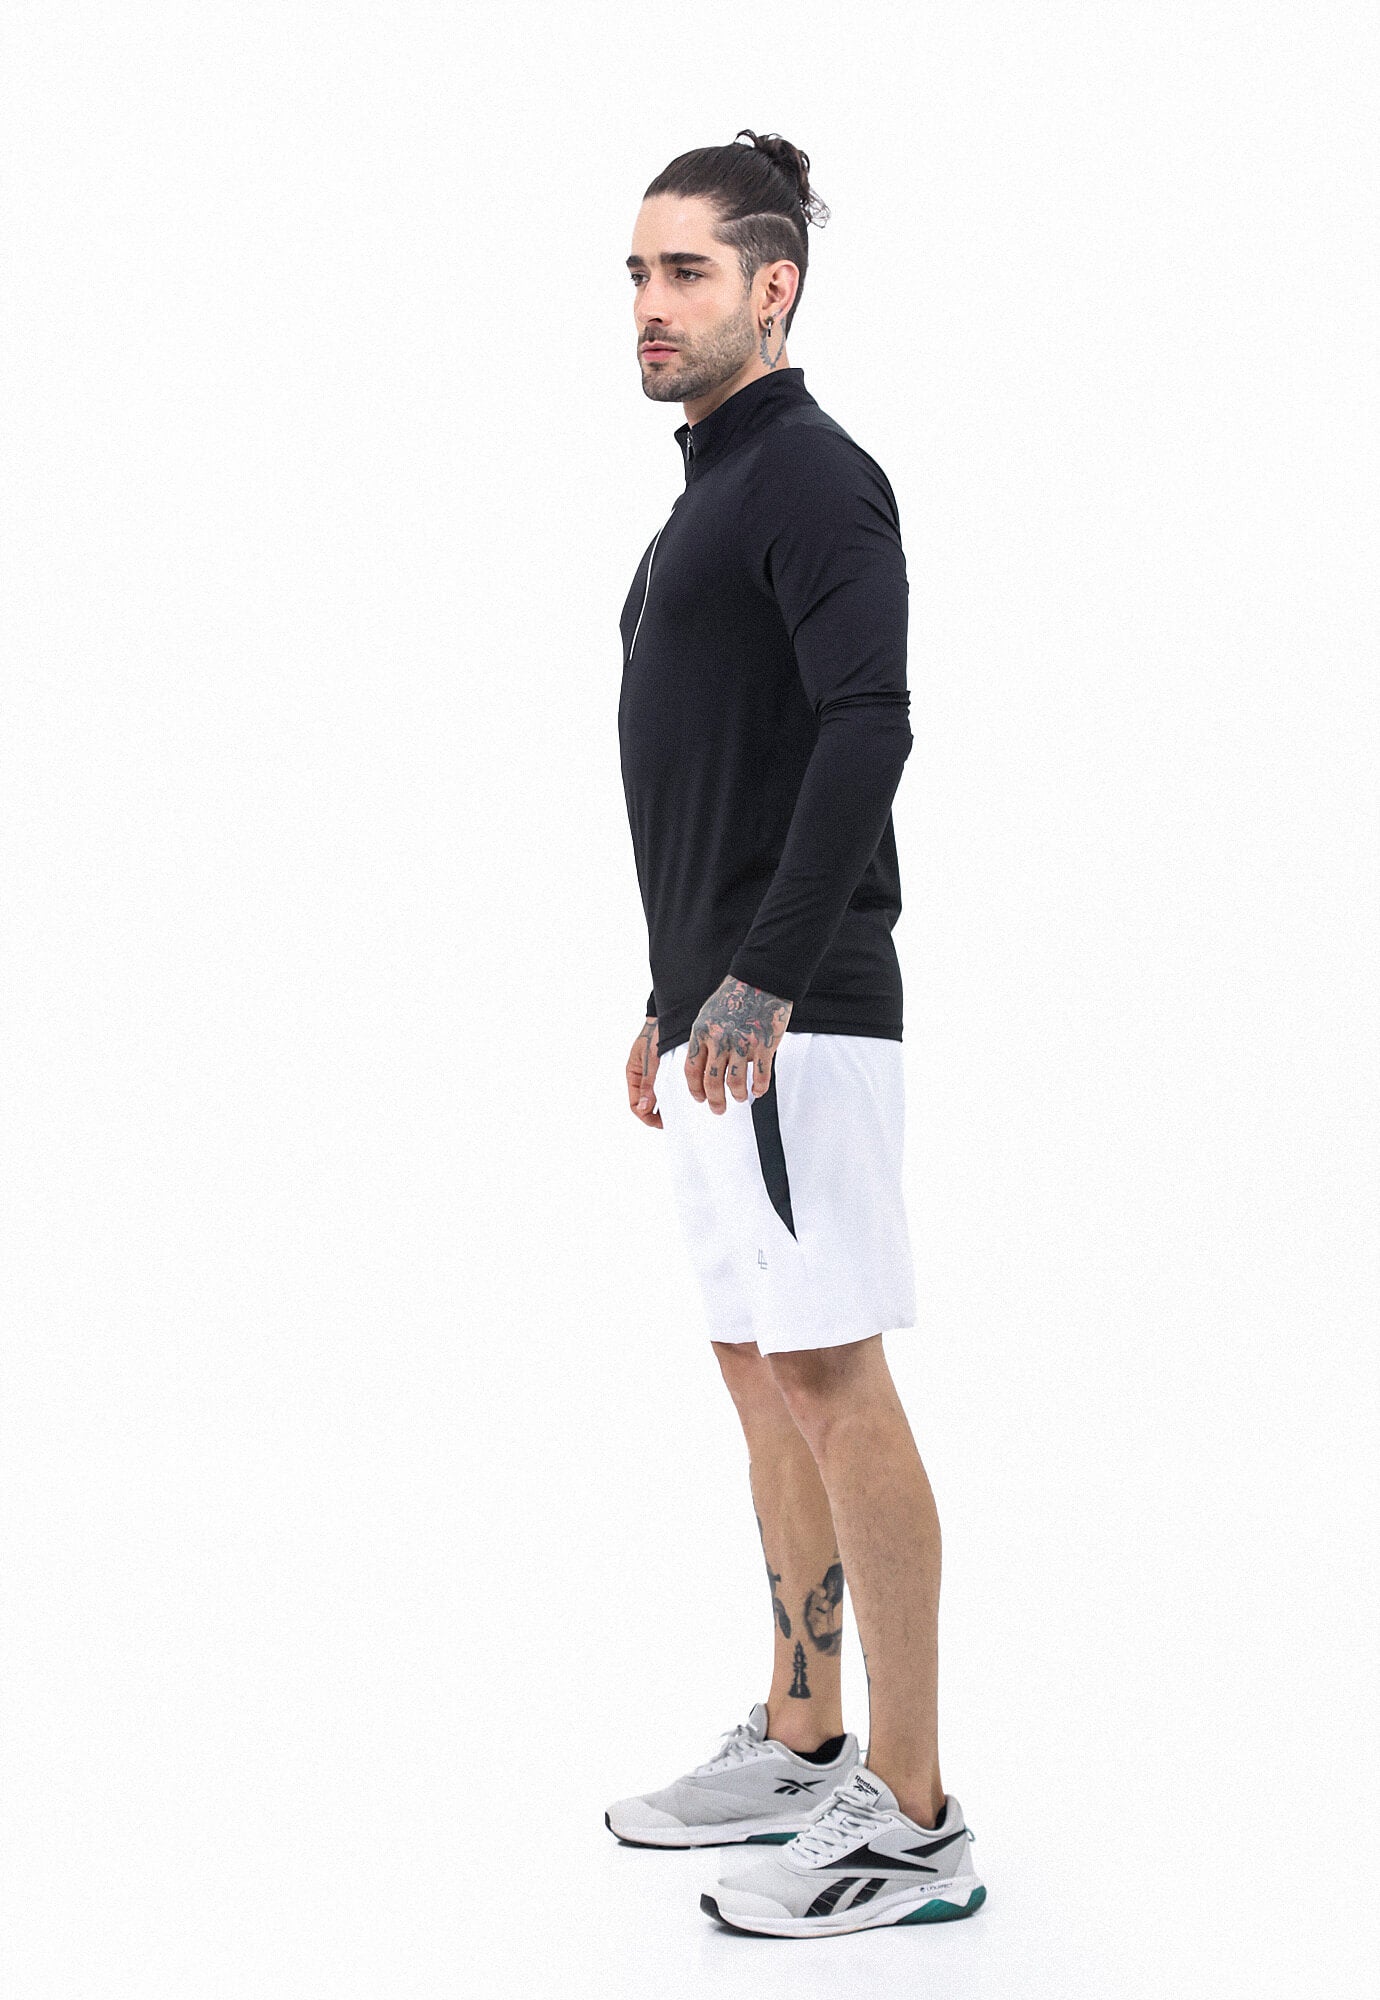 Camiseta deportiva negra con bloques en contraste en mangas, manga larga y cuello redondo para hombre